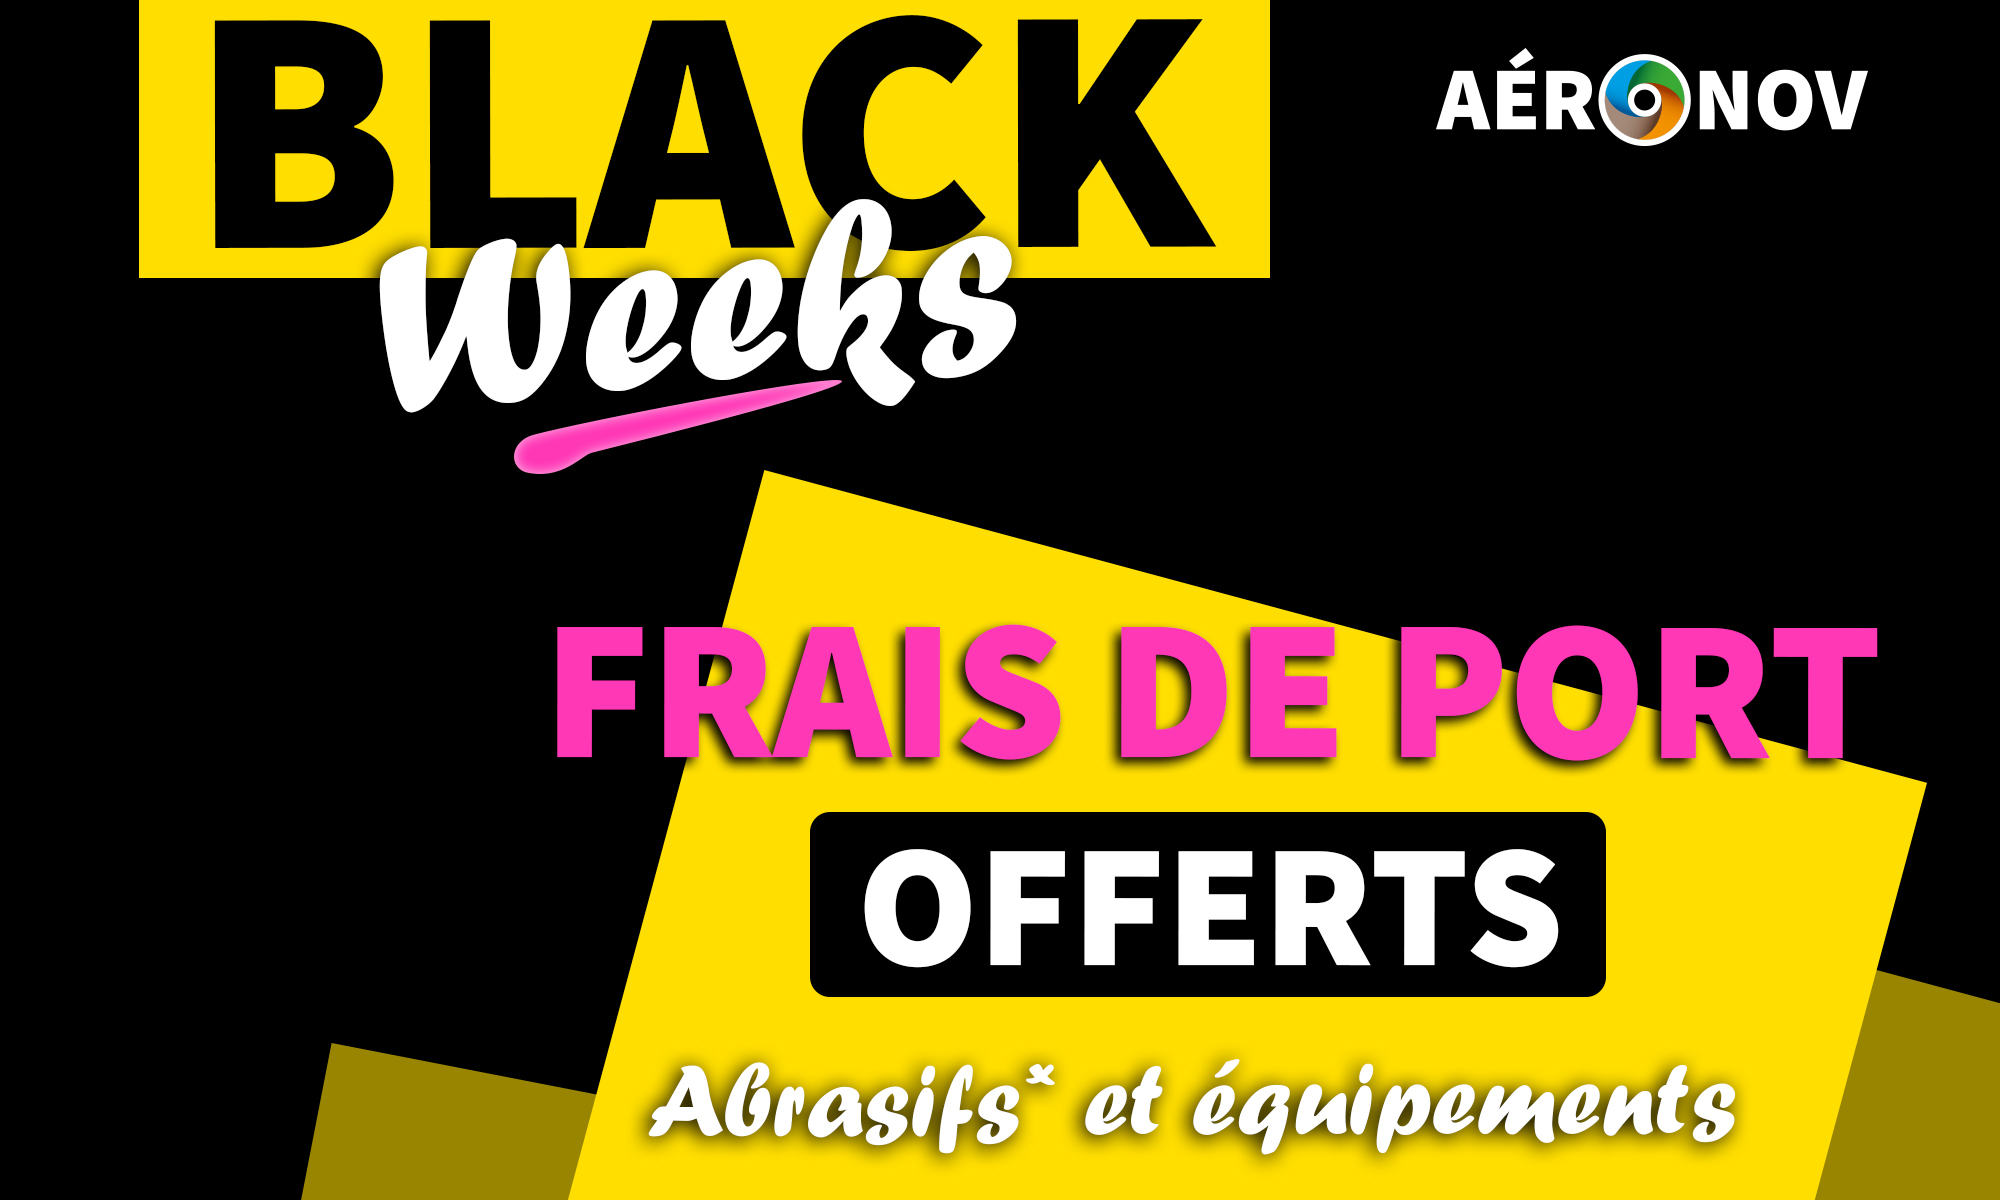 BLACK WEEKS - Les frais de port sont offerts !